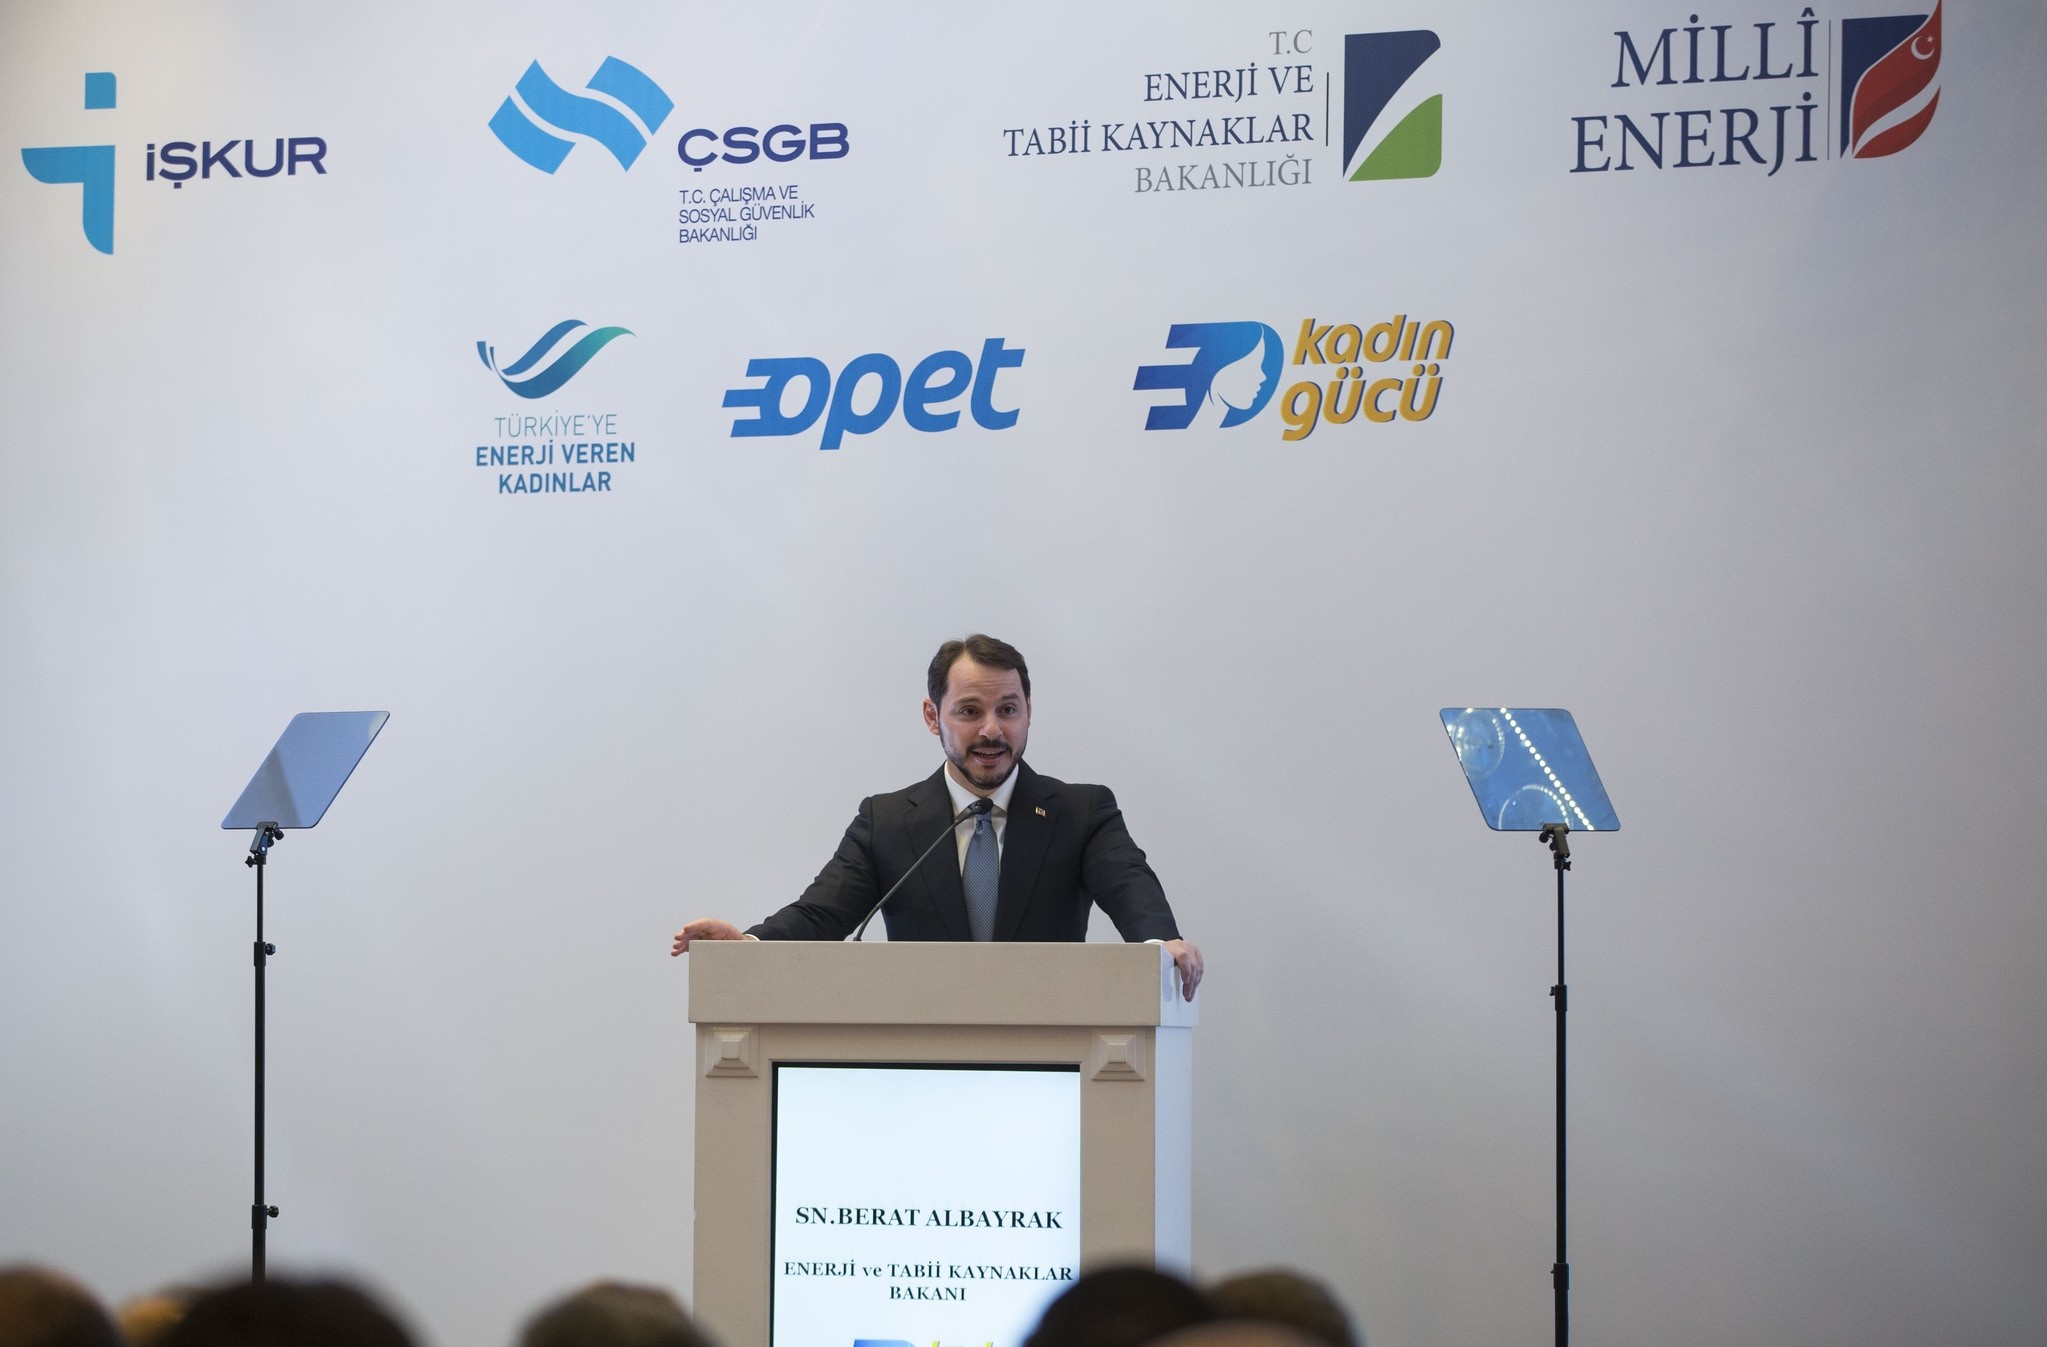 Energy Minister Berat Albayrak